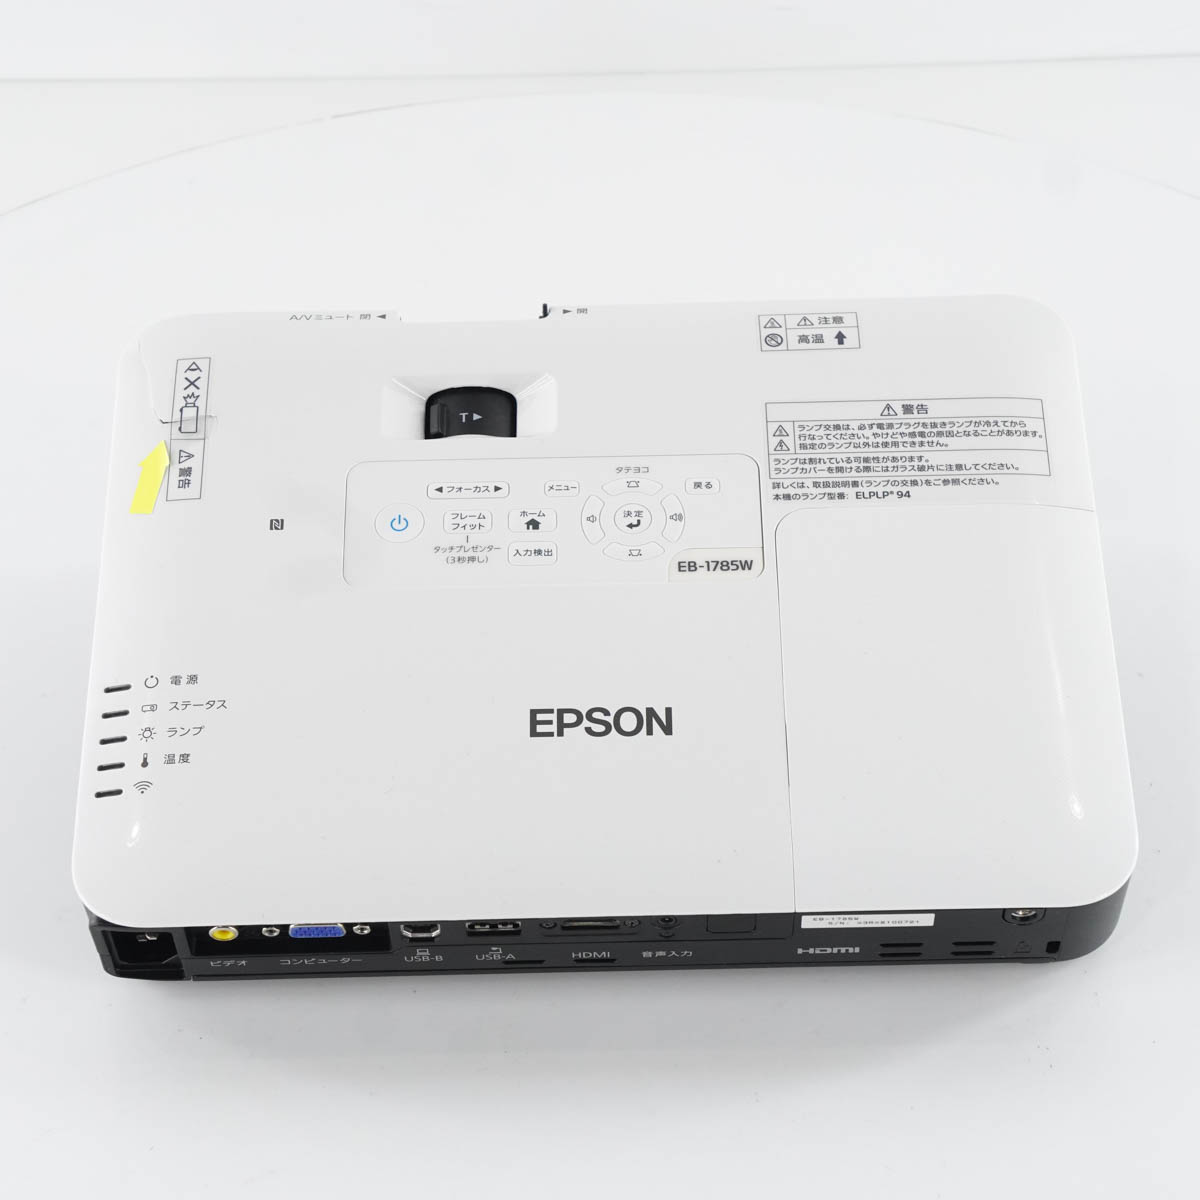 PG]USED 8日保証 ランプ232時間 EPSON EB-1785W H793D プロジェクター 